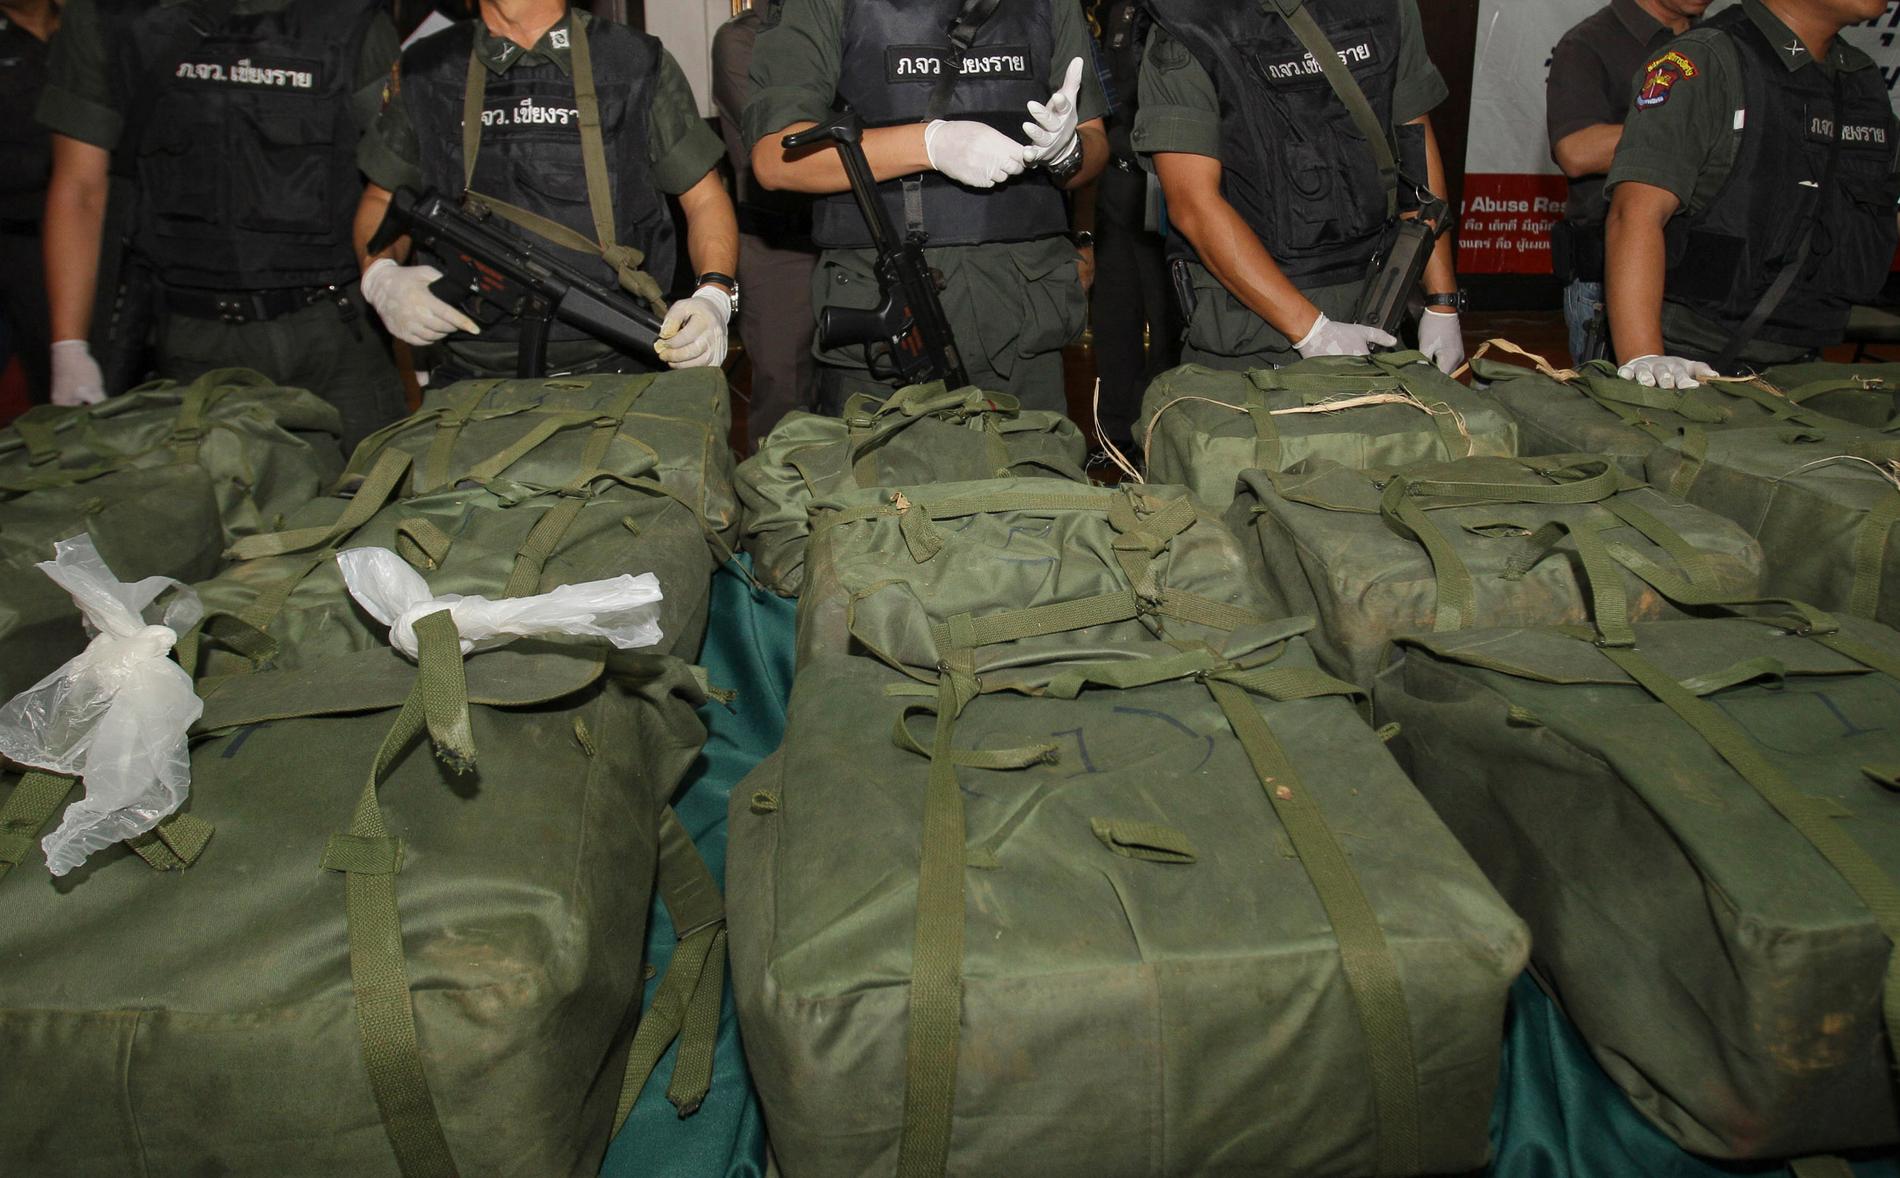 Arkivbild. Fyra miljoner metaamfetaminpiller visas upp av polisen i Bangkok 2013.